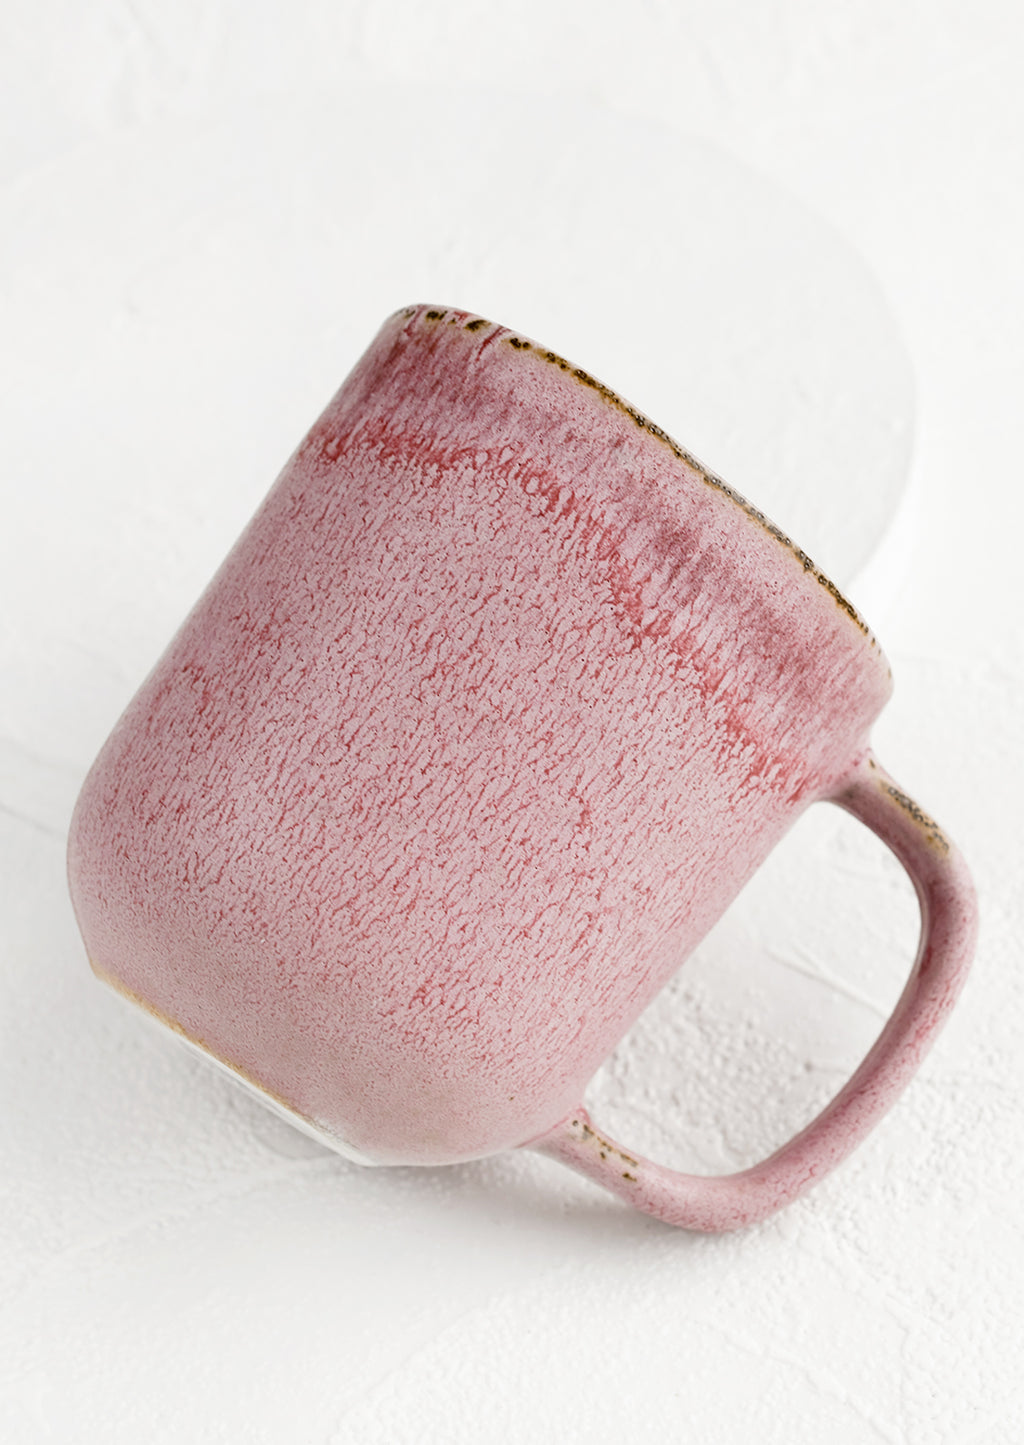 2: A purple ceramic mug with mottled glaze appearance.